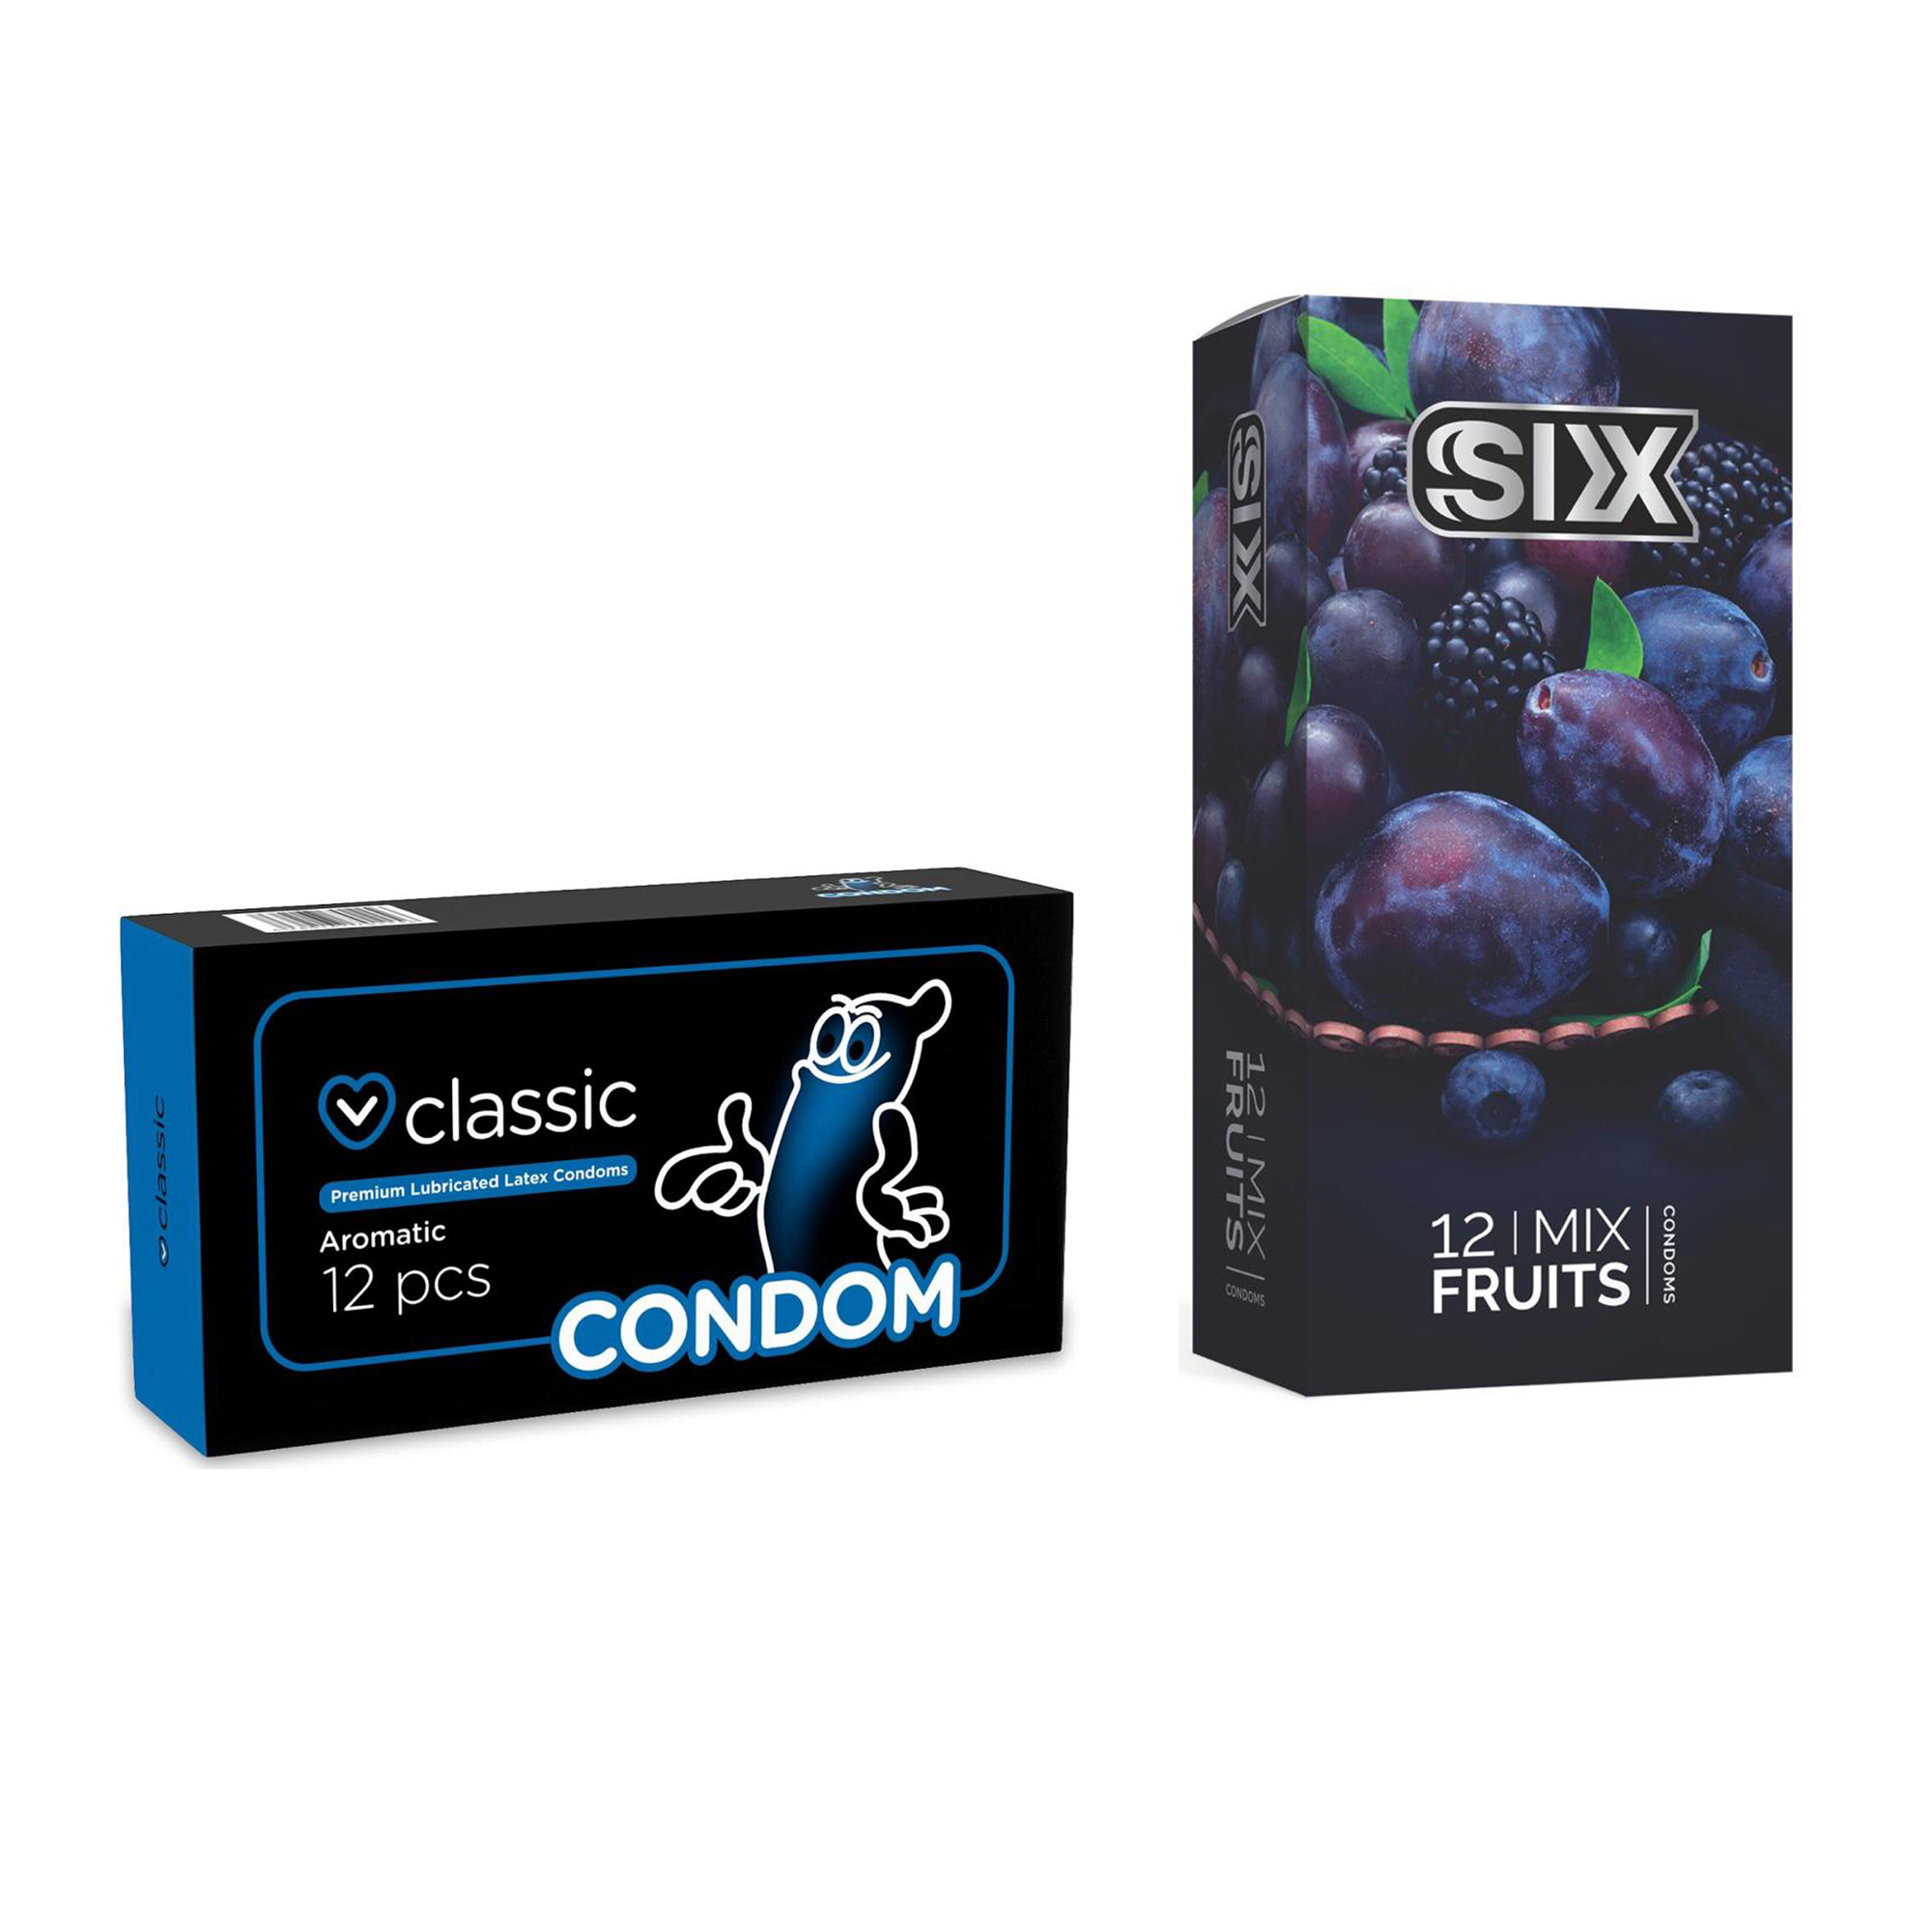 کاندوم سیکس مدل Mix Fruits بسته 12 عددی به همراه کاندوم کاندوم مدل Classic بسته 12 عددی